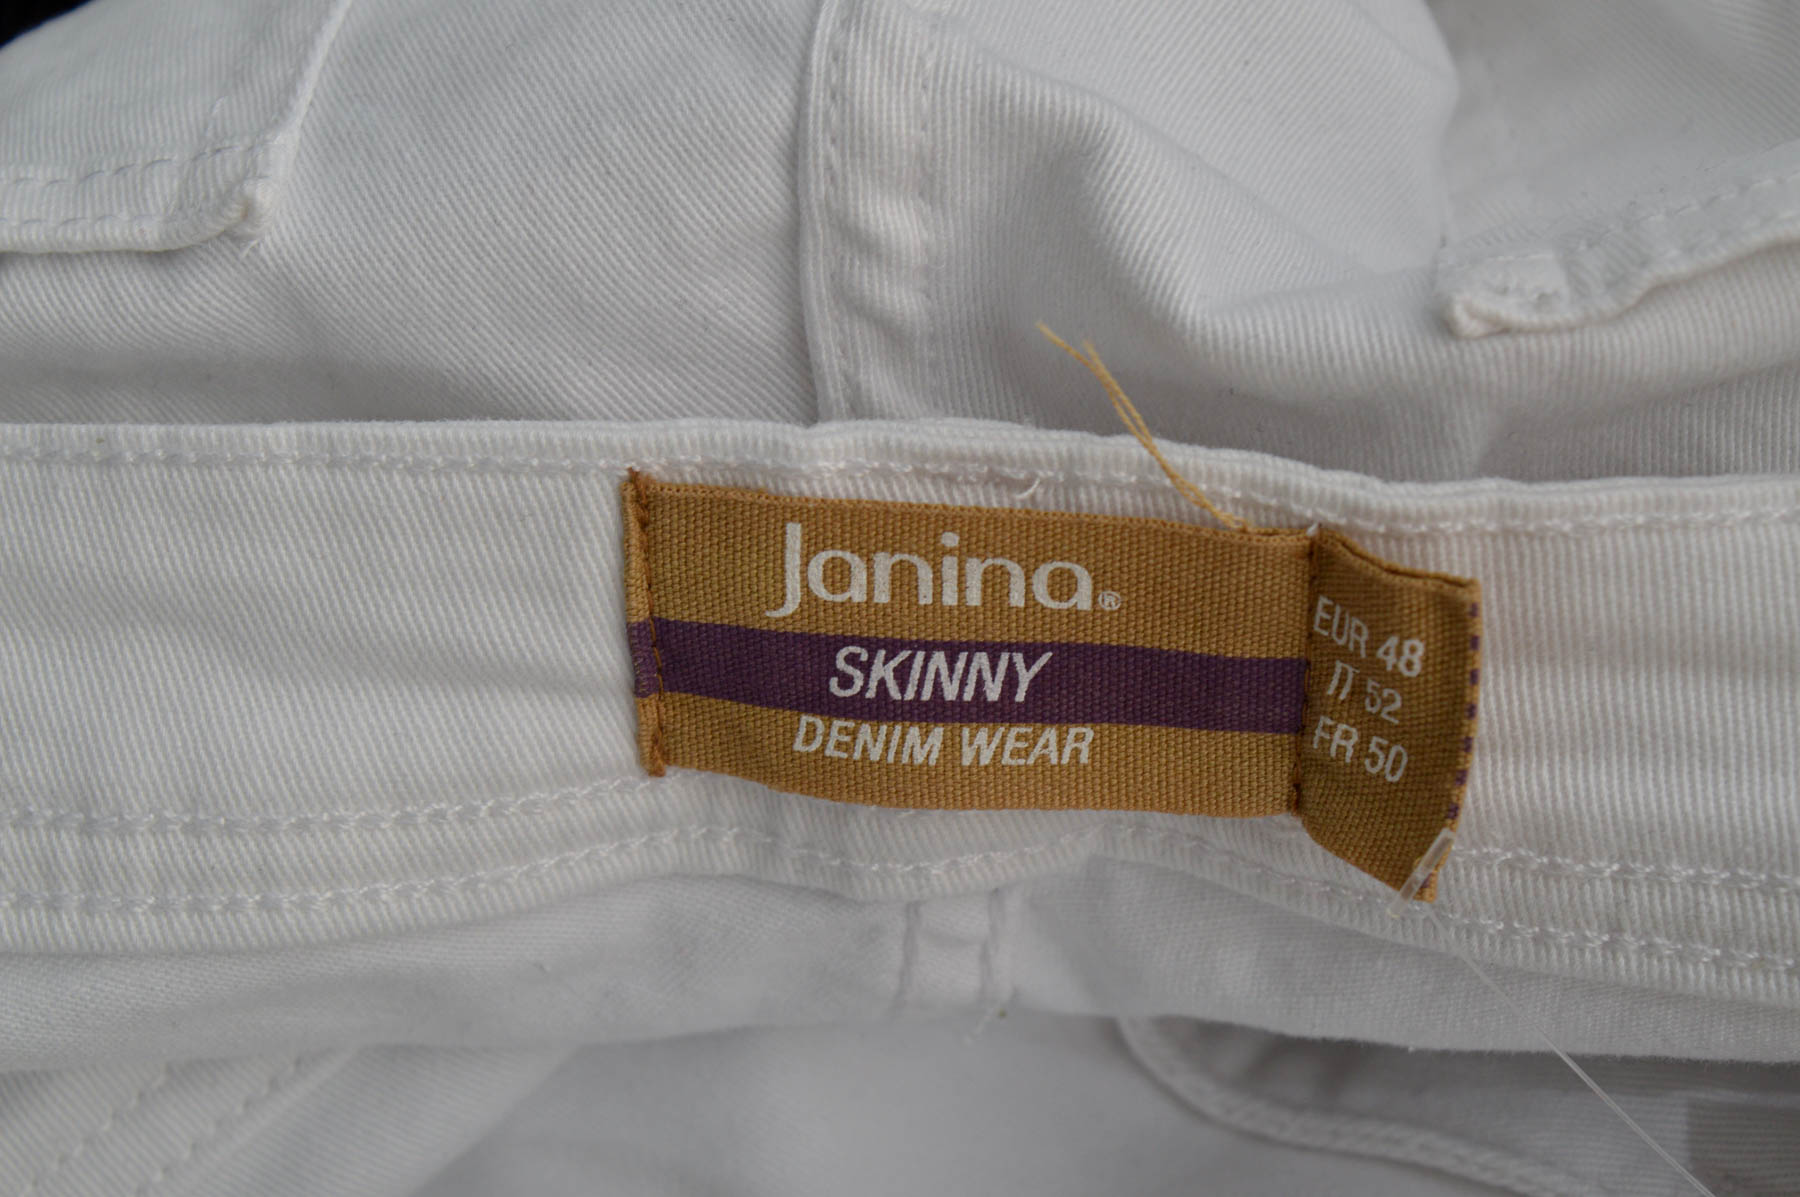 Spodnie damskie - Janina - 2